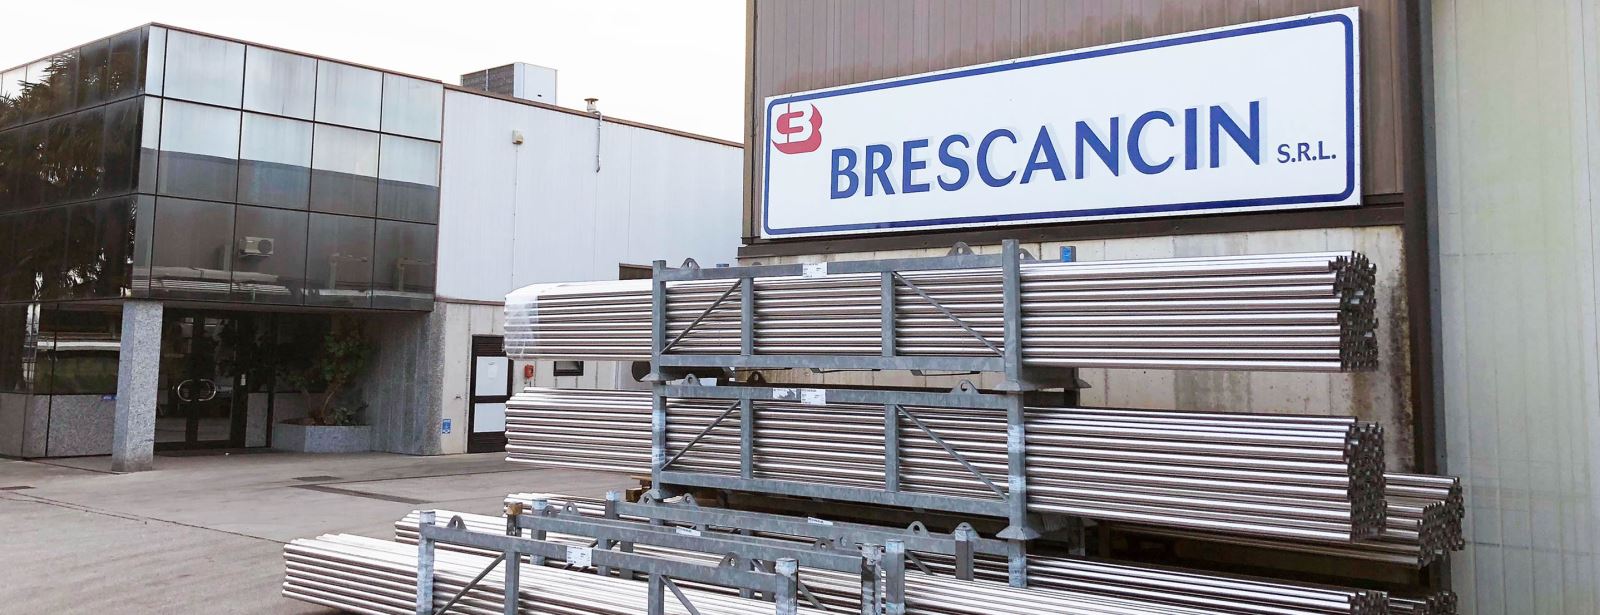 La sede operativa di Brescancin